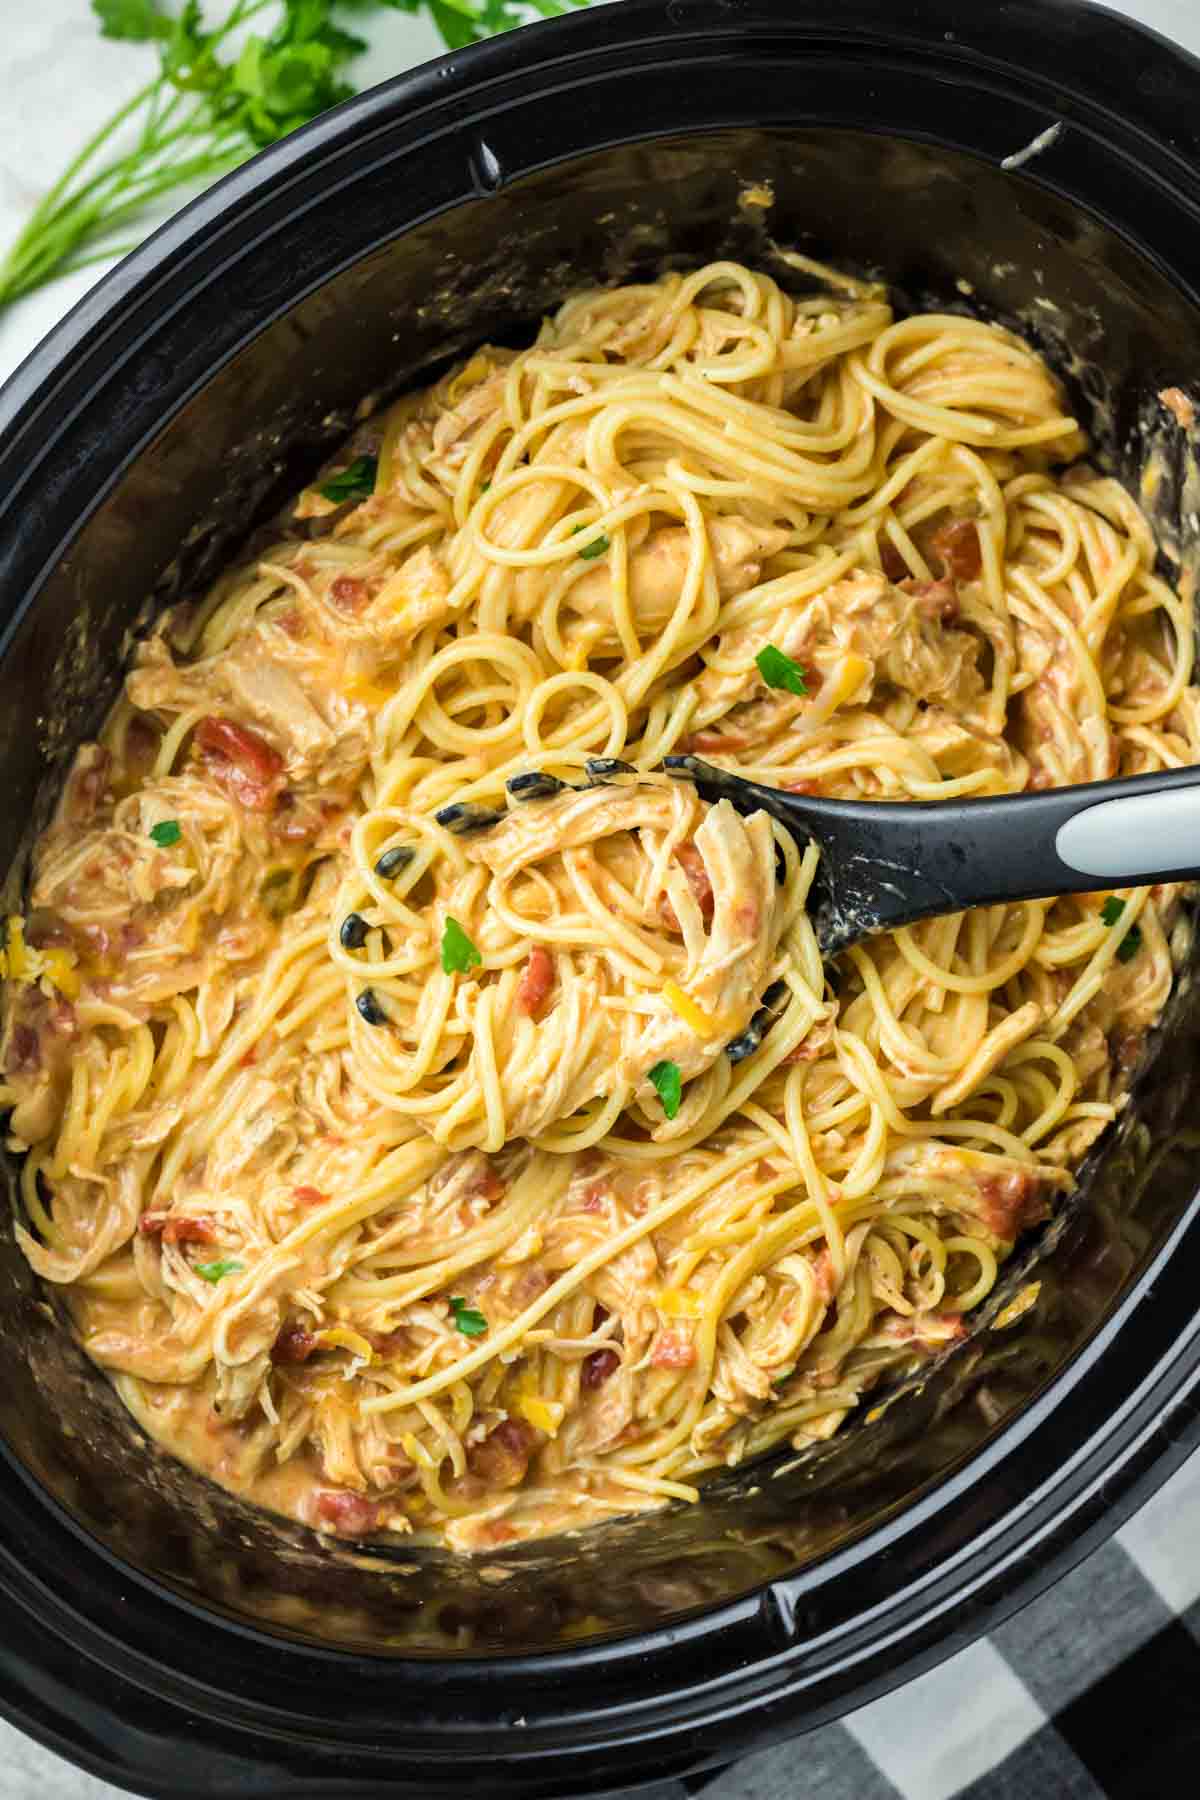 Chicken spaghetti in a crockpot.